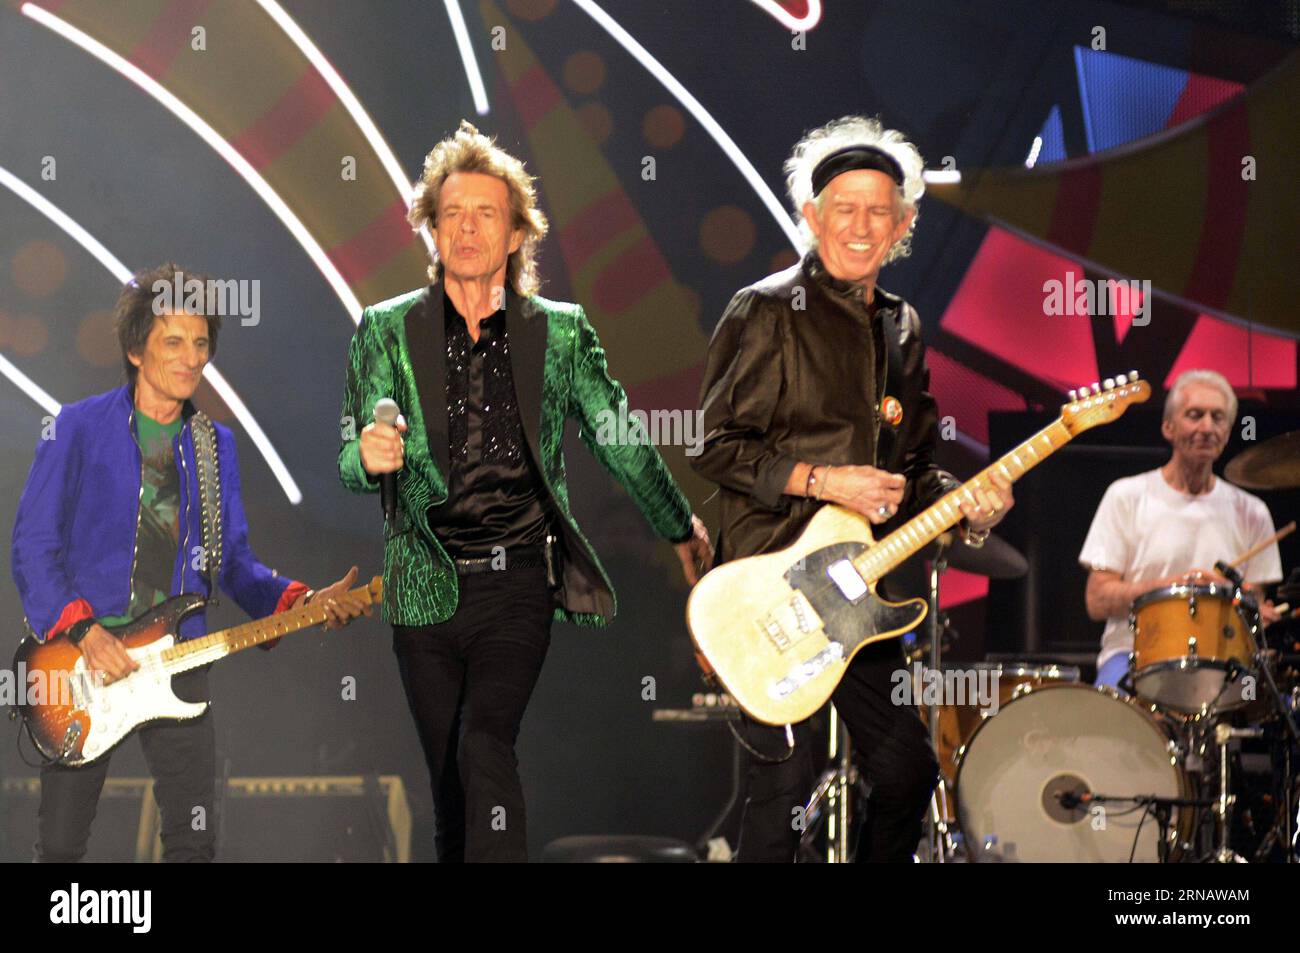 (160208) -- LA PLATA, 8 febbraio 2016 -- i membri della rock band britannica The Rolling Stones si esibiscono durante il loro concerto al la Plata Stadium di la Plata, Argentina, il 7 febbraio 2016. Carlos Cemele/) ARGENTINA-LA PLATA-MUSIC-ROLLING STONES TELAM PUBLICATIONxNOTxINxCHN la Plata 8 febbraio 2016 i membri dei British Rock Tie The Rolling Stones si esibiscono durante il loro concerto AL la Plata Stage a la Plata Argentina IL 7 febbraio 2016 Carlos Argentina la Plata Music Rolling Stones Telam PUBLICATIONXINxCHN Foto Stock